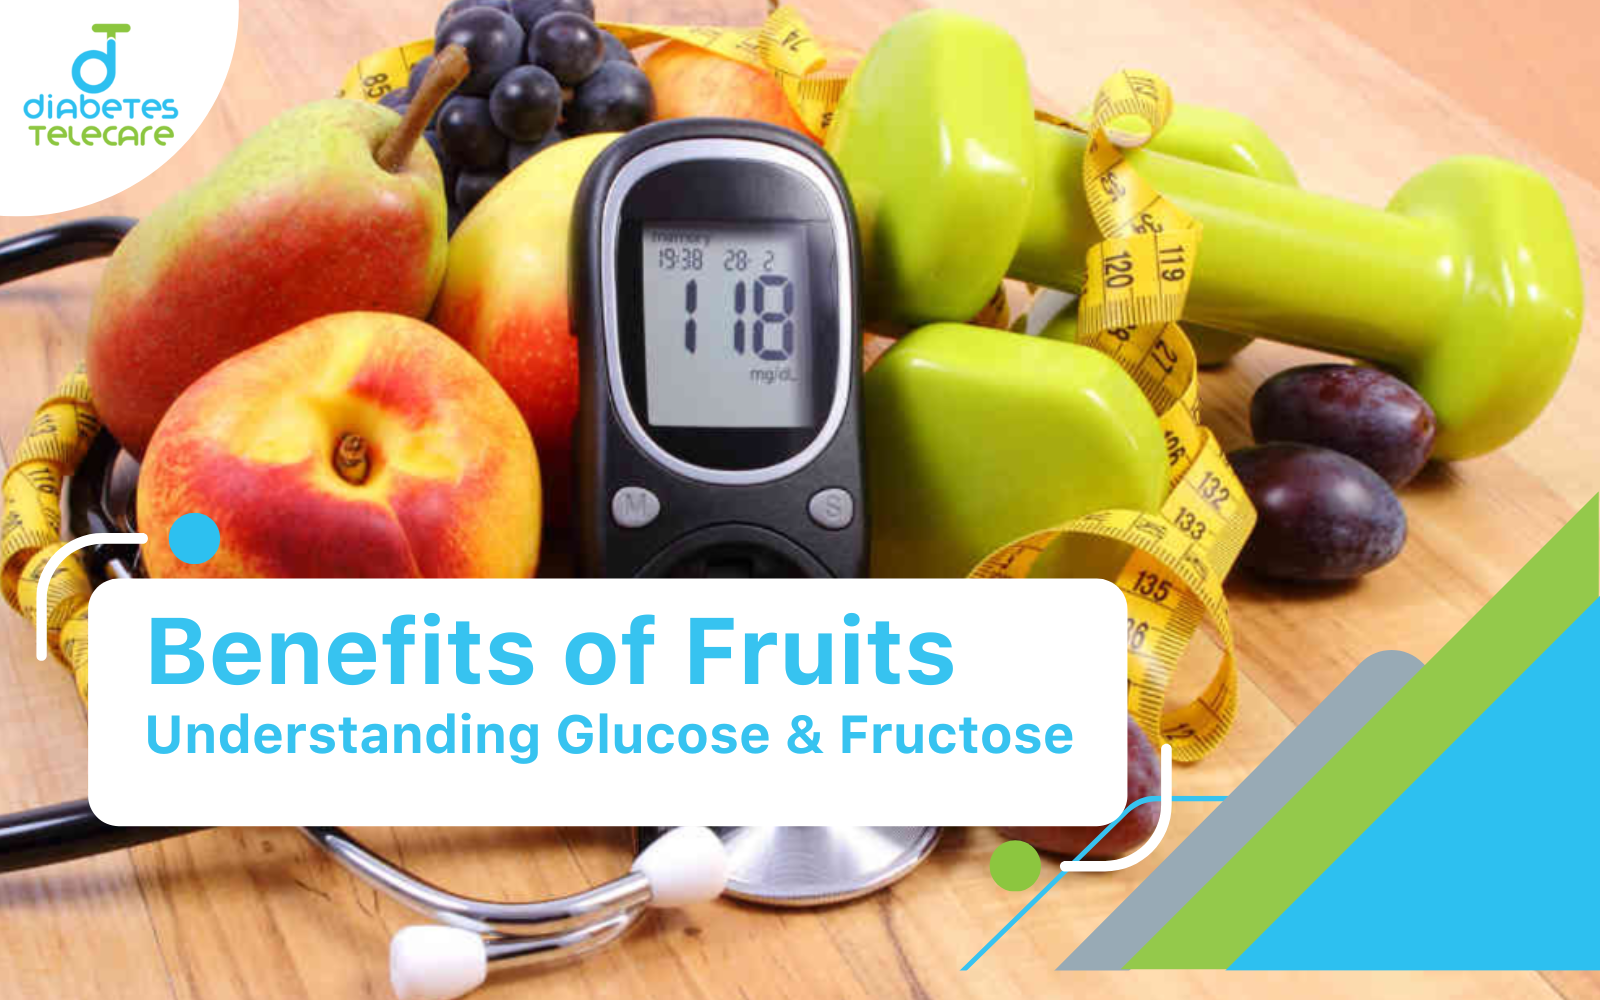 fruits for diabetes patients